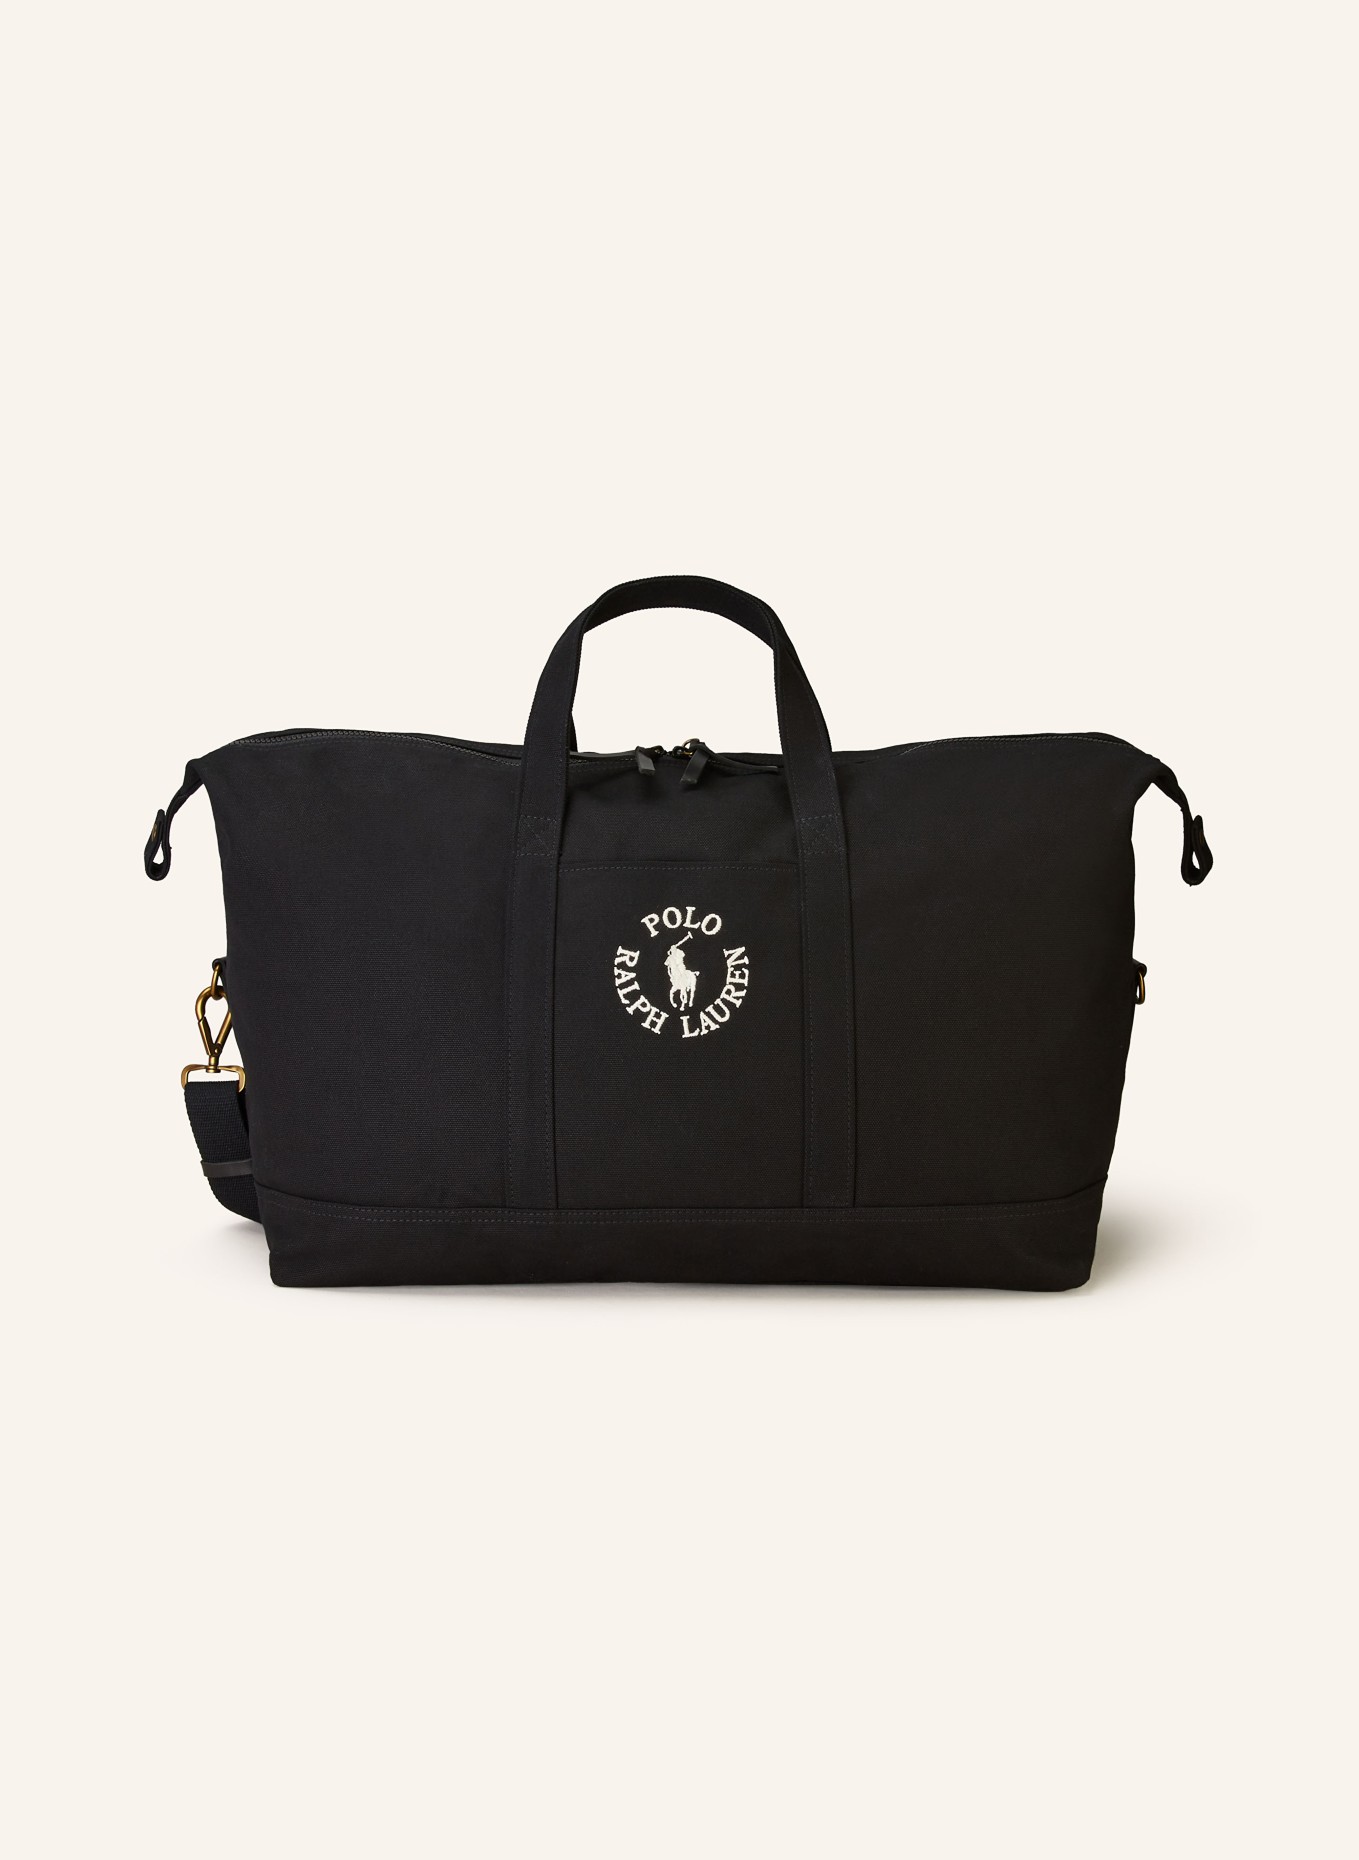 POLO RALPH LAUREN Travel bag, Color: BLACK (Image 1)